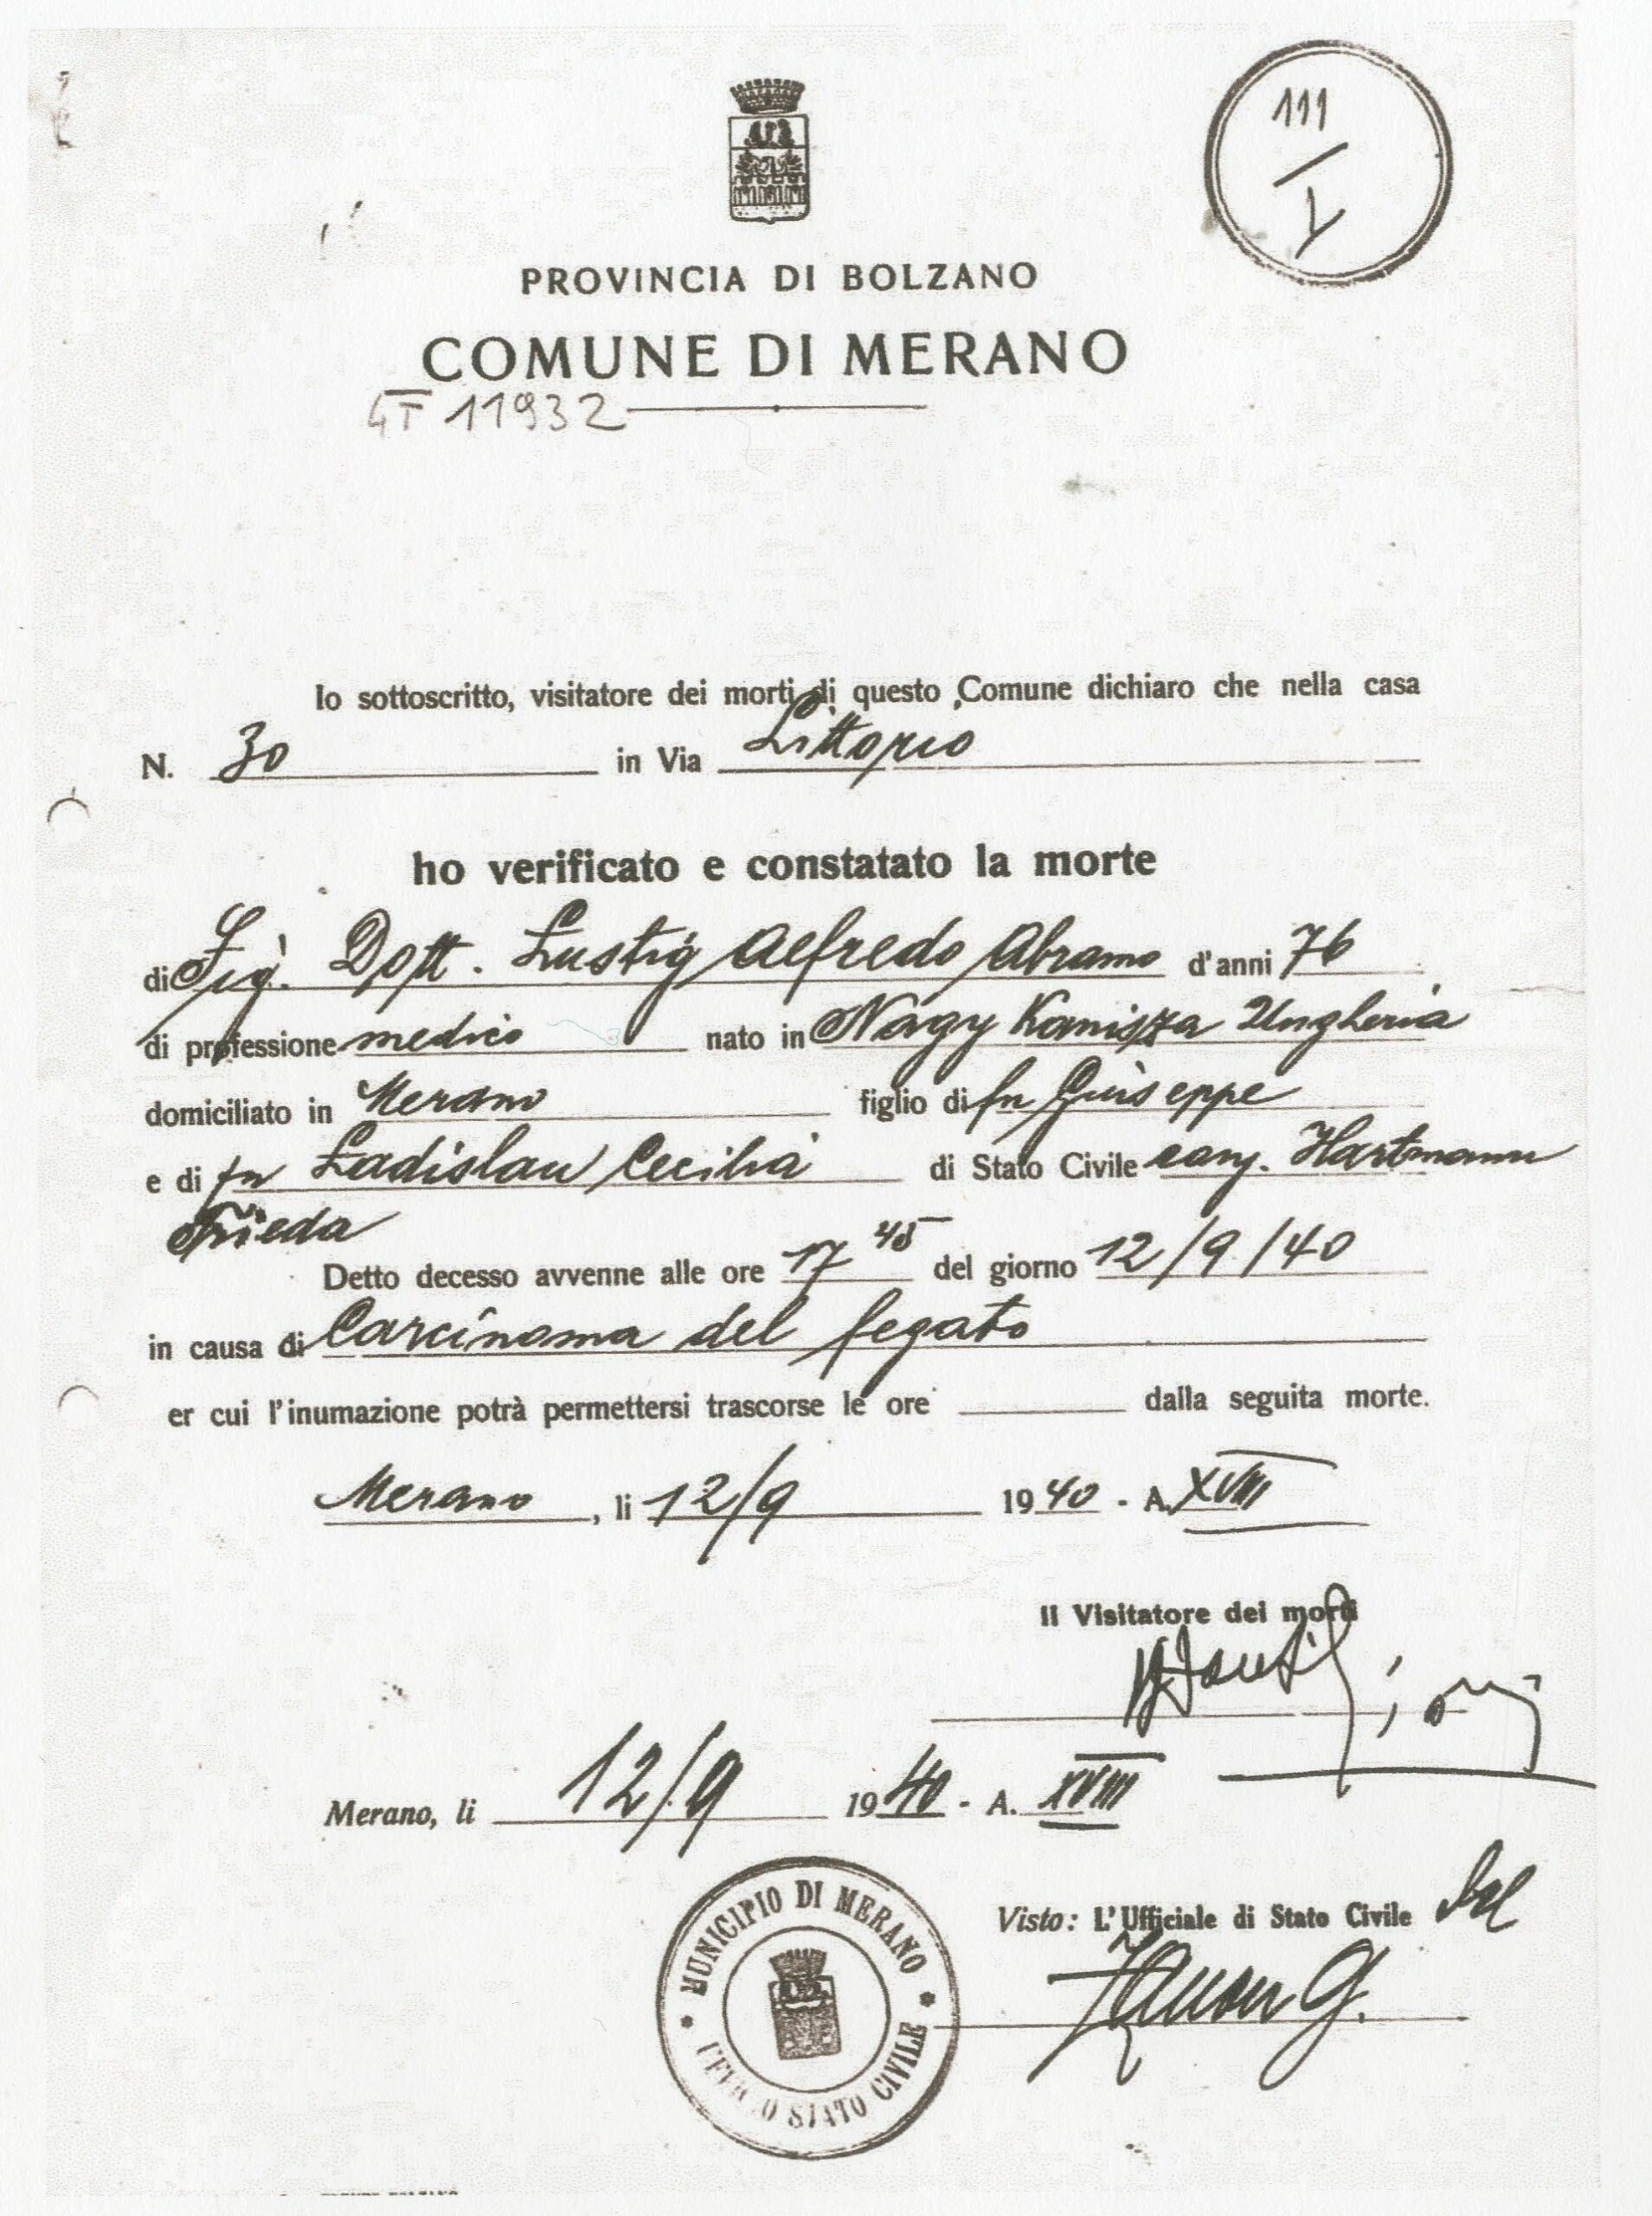 Death certificate 1940, SAM-GT11932 death certificate (Merano Municipal Archives)